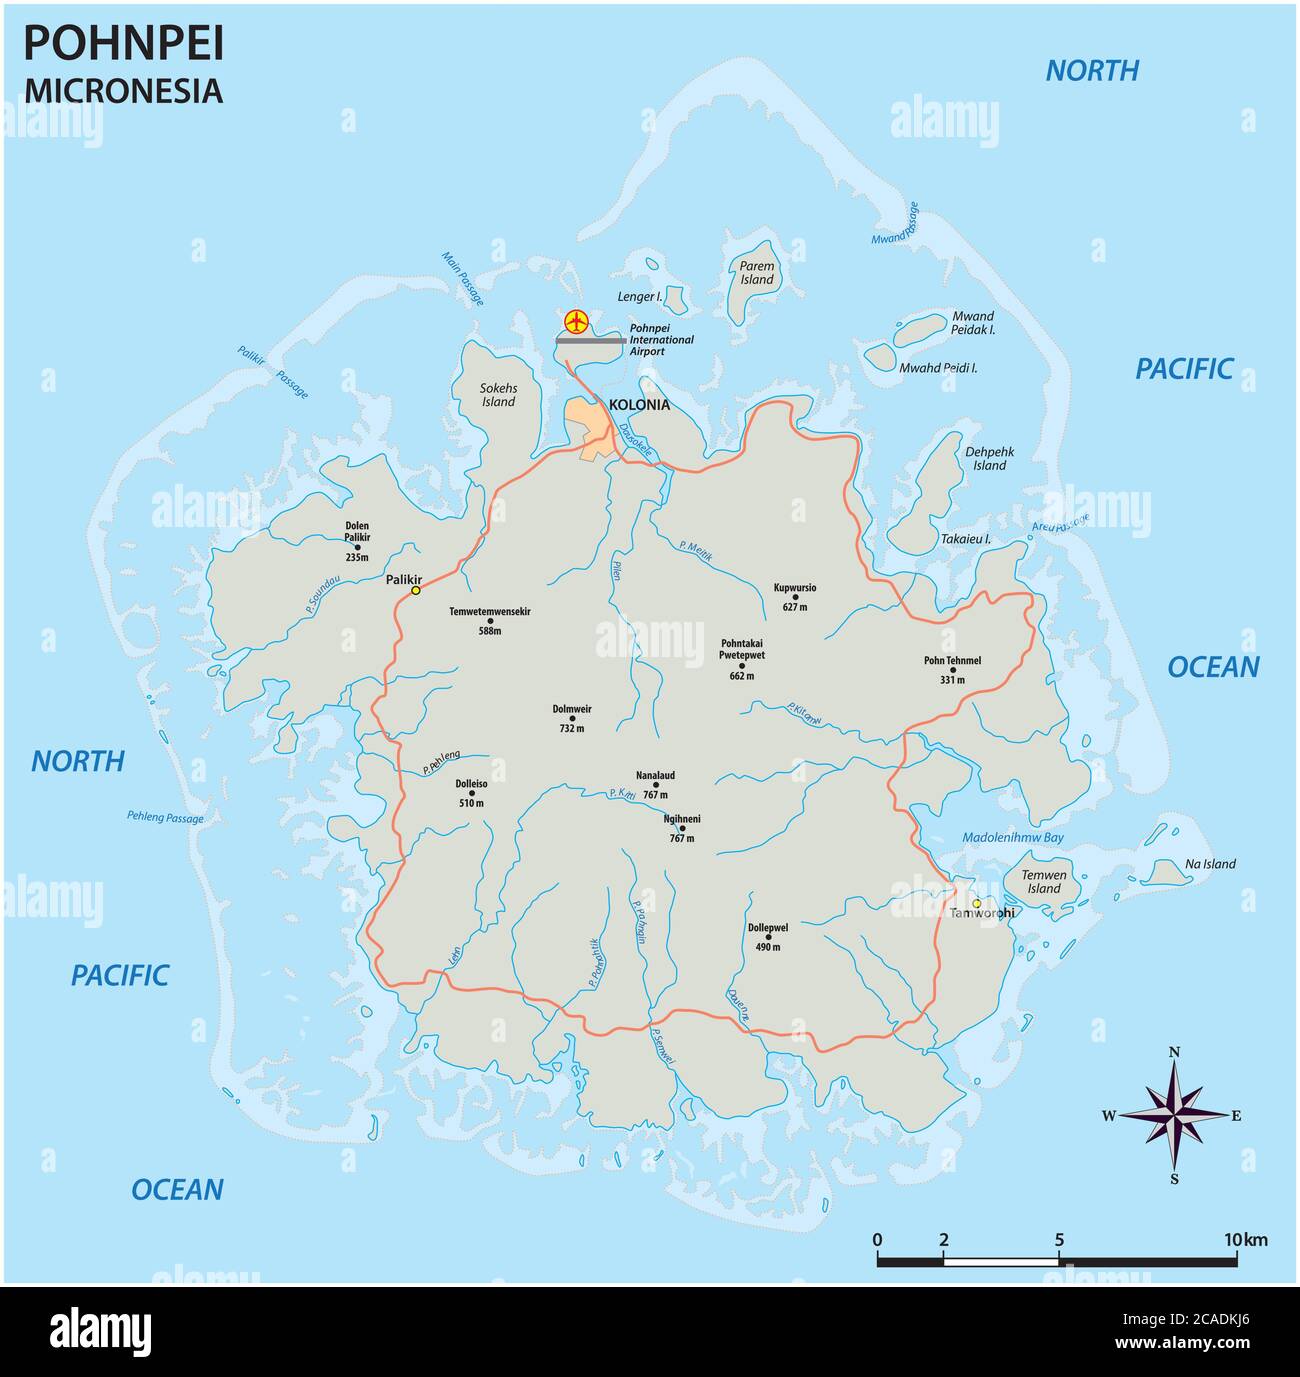 Vektor-Straßenkarte der wichtigsten Mikronesianischen Insel Pohnpei Stock Vektor